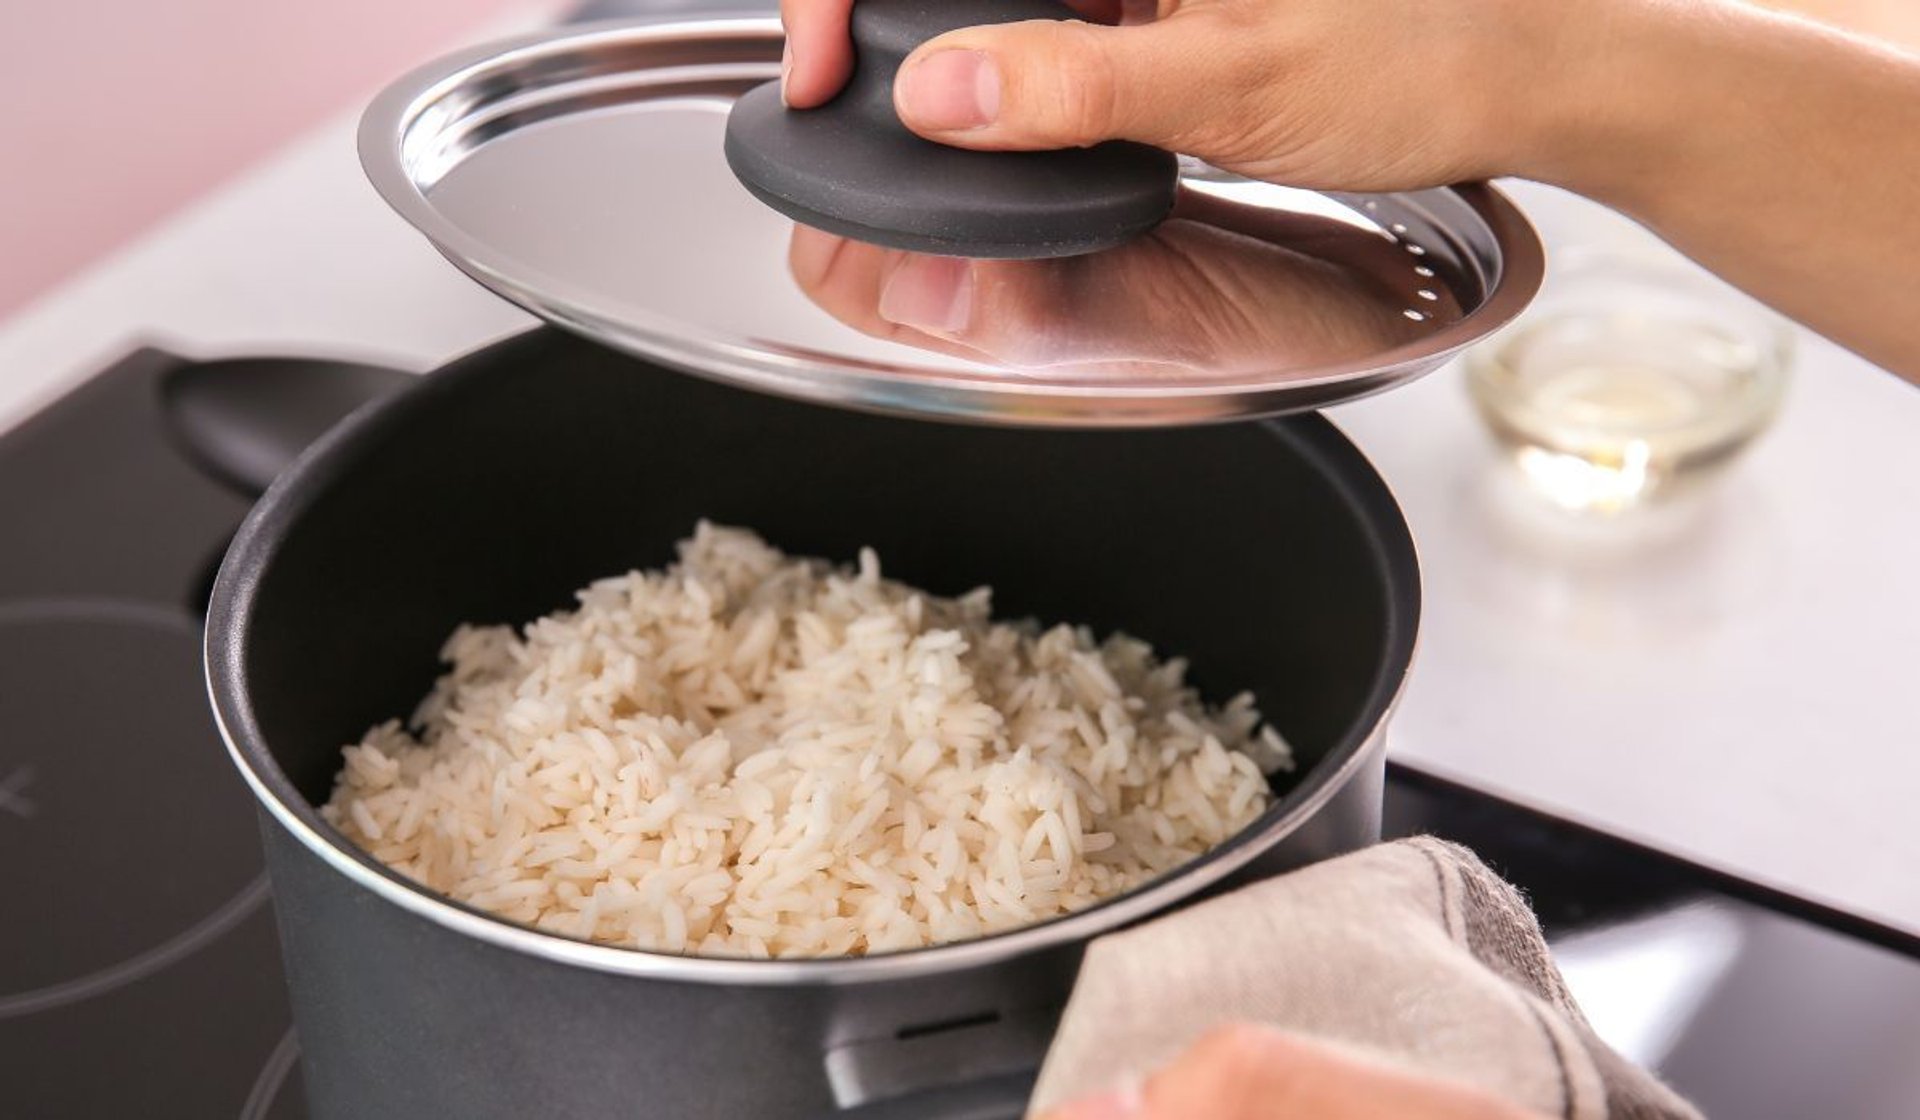 ugotowany ryż